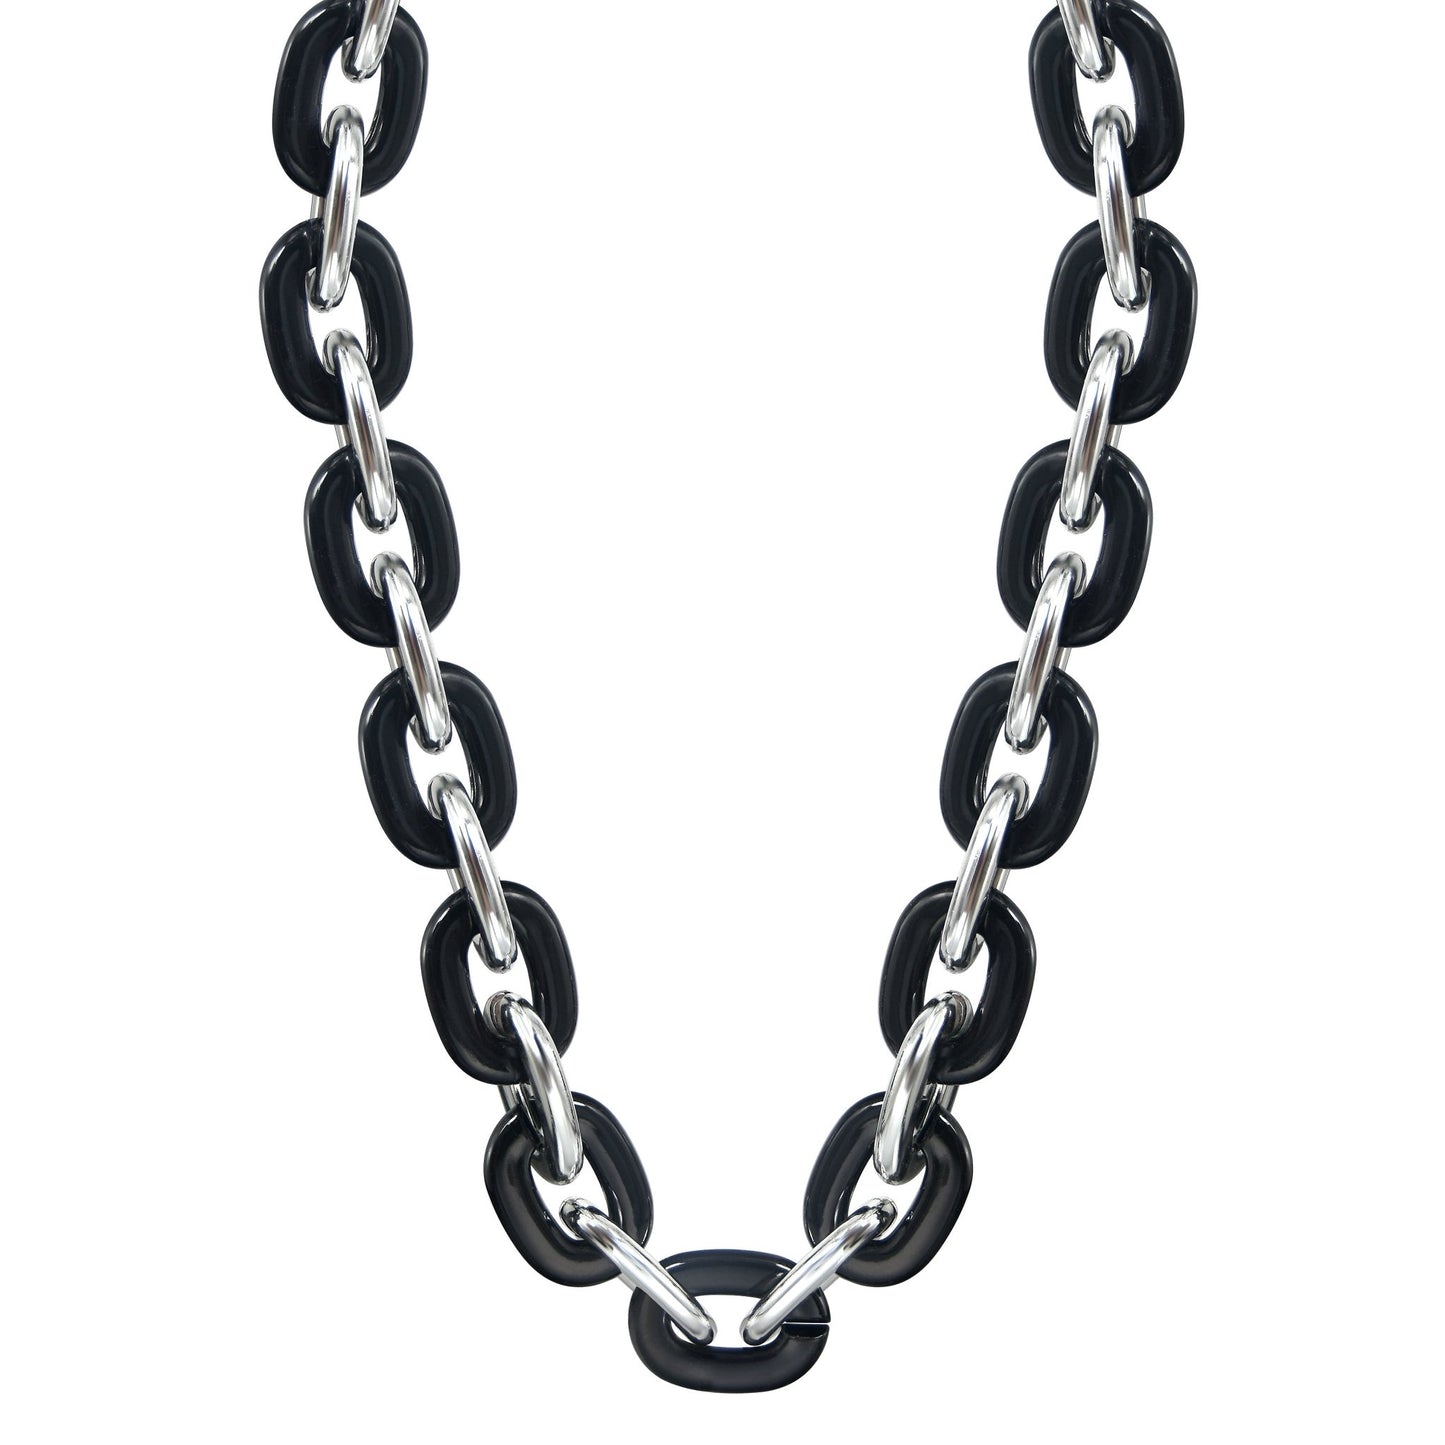 Jumbo Fan Chain Necklace - Gamedays Gear - Black / Silver